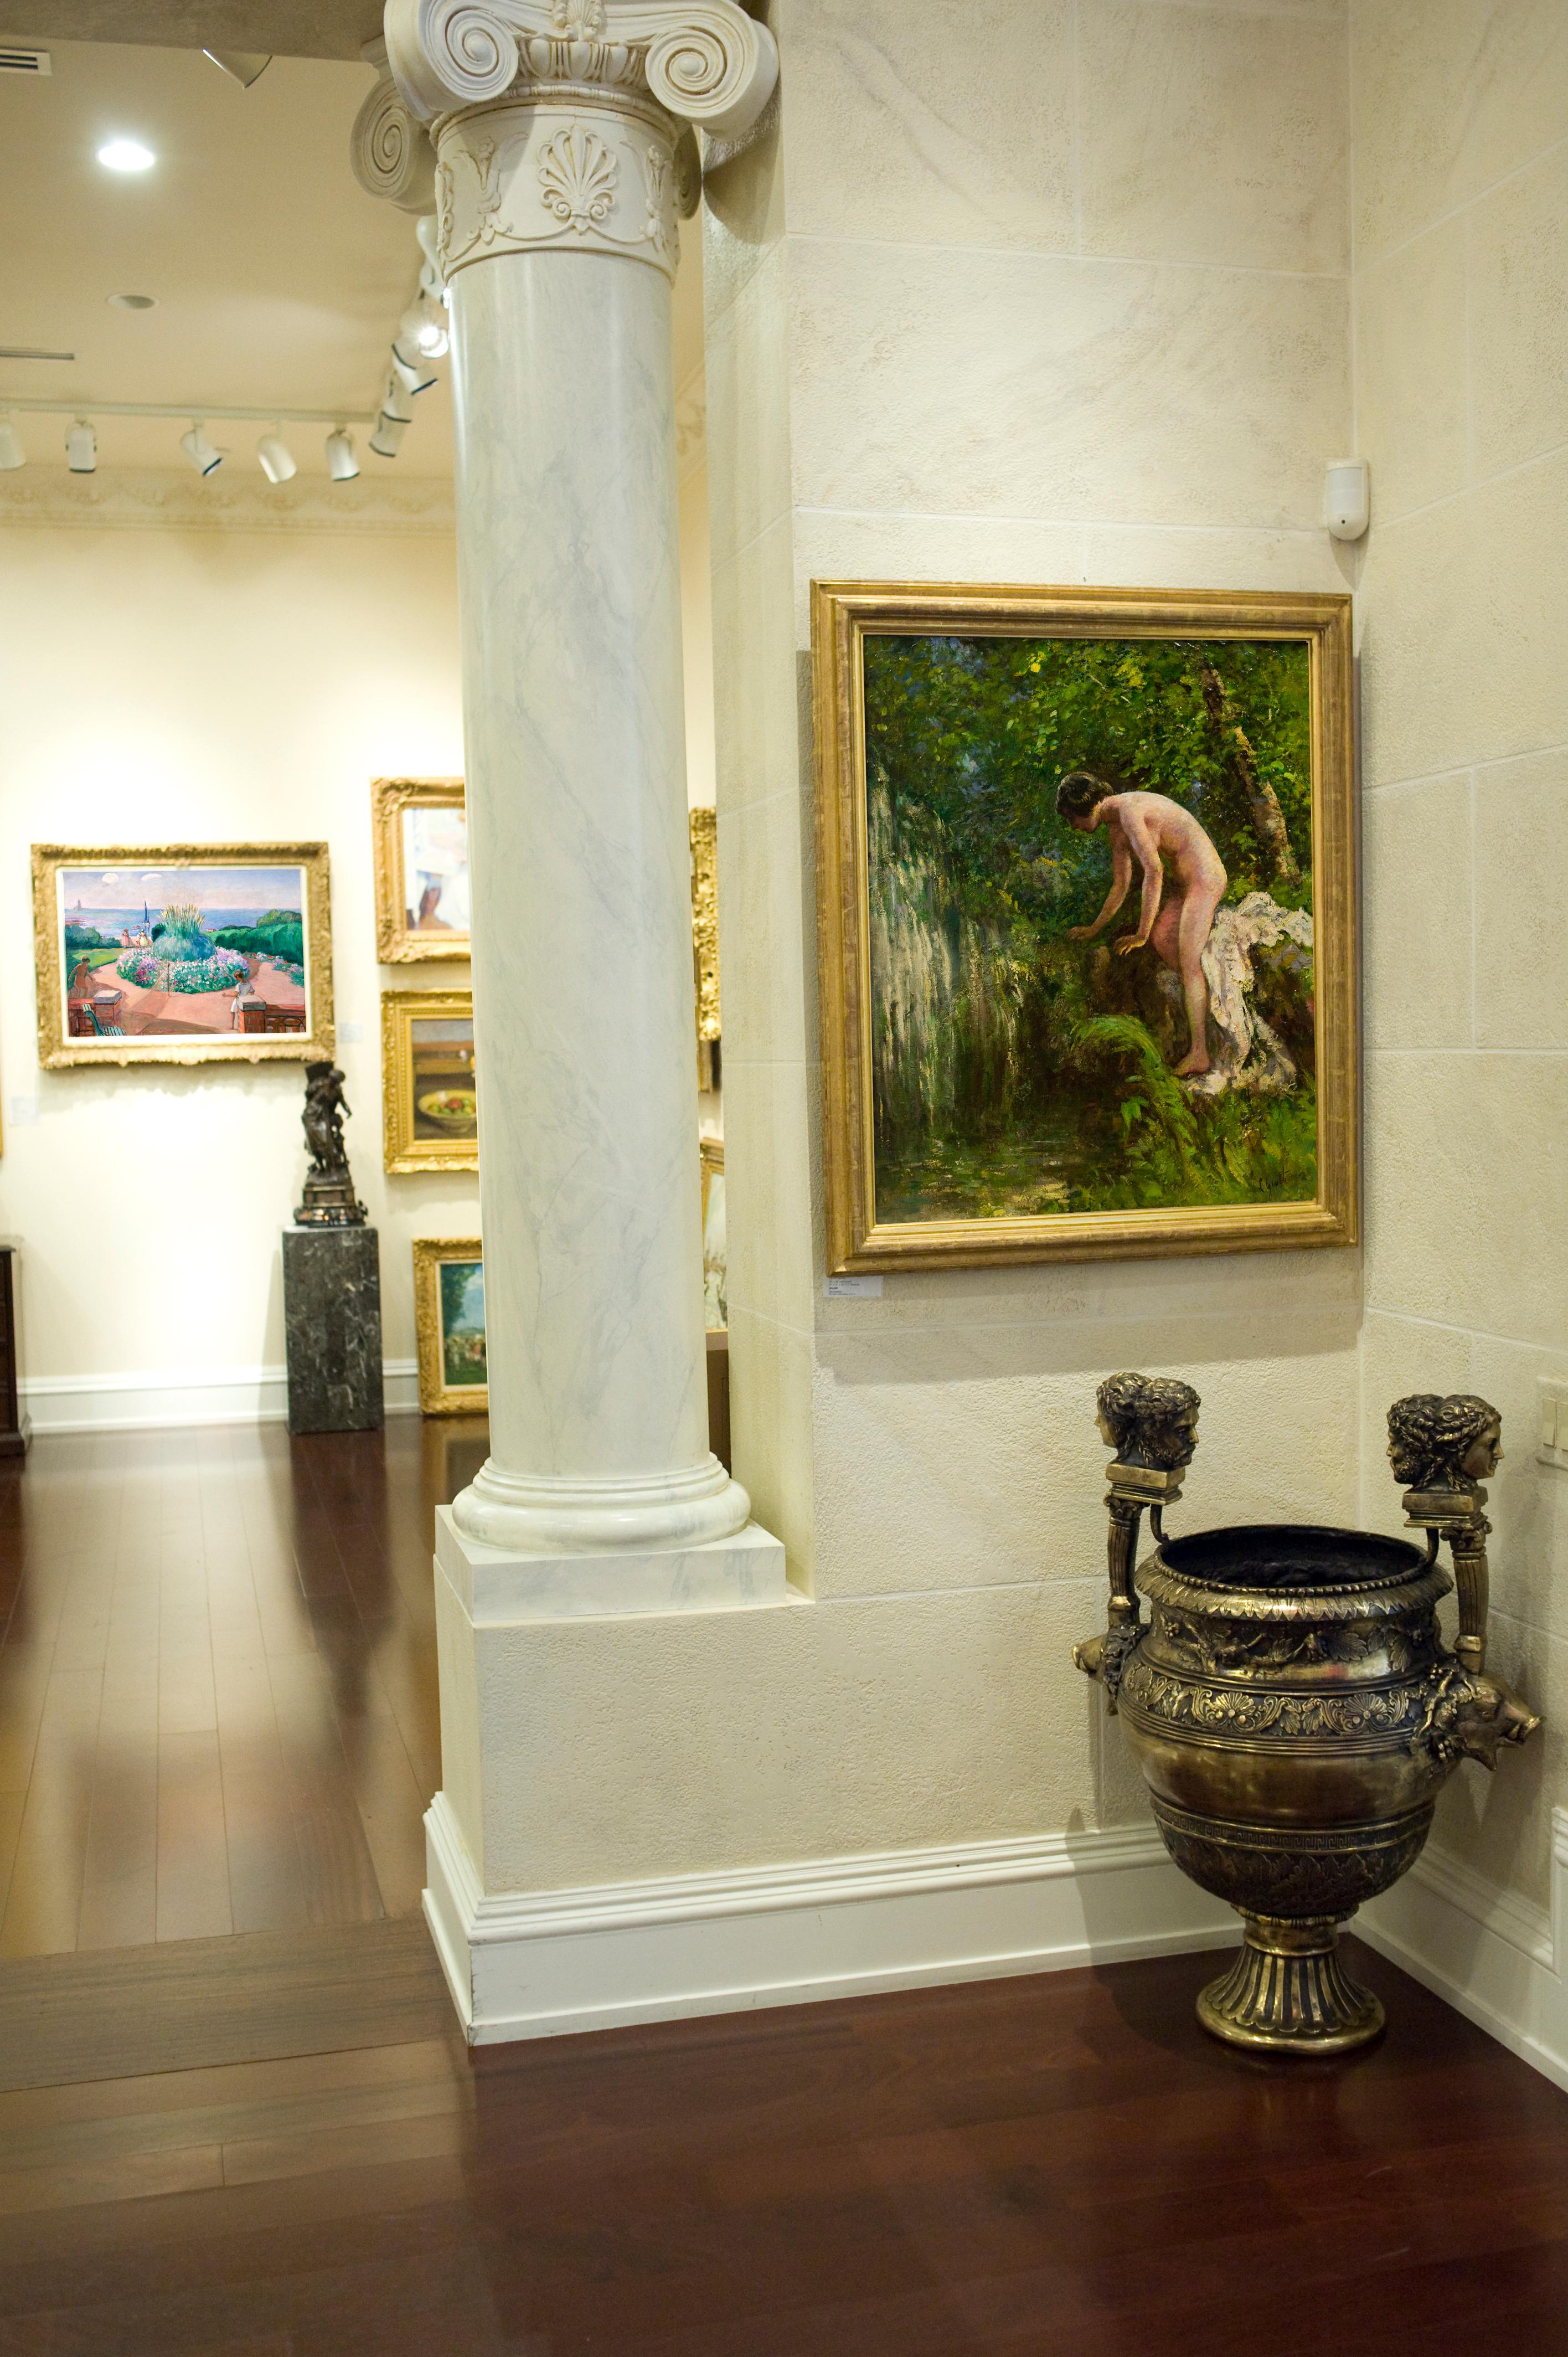 Signé en bas à droite

Lillian Genth était une importante peintre figurative américaine. Elle a étudié aux États-Unis et à Paris, auprès de James McNeil Whistler. Genth a peint un grand nombre de ses nus féminins en plein air dans sa propriété